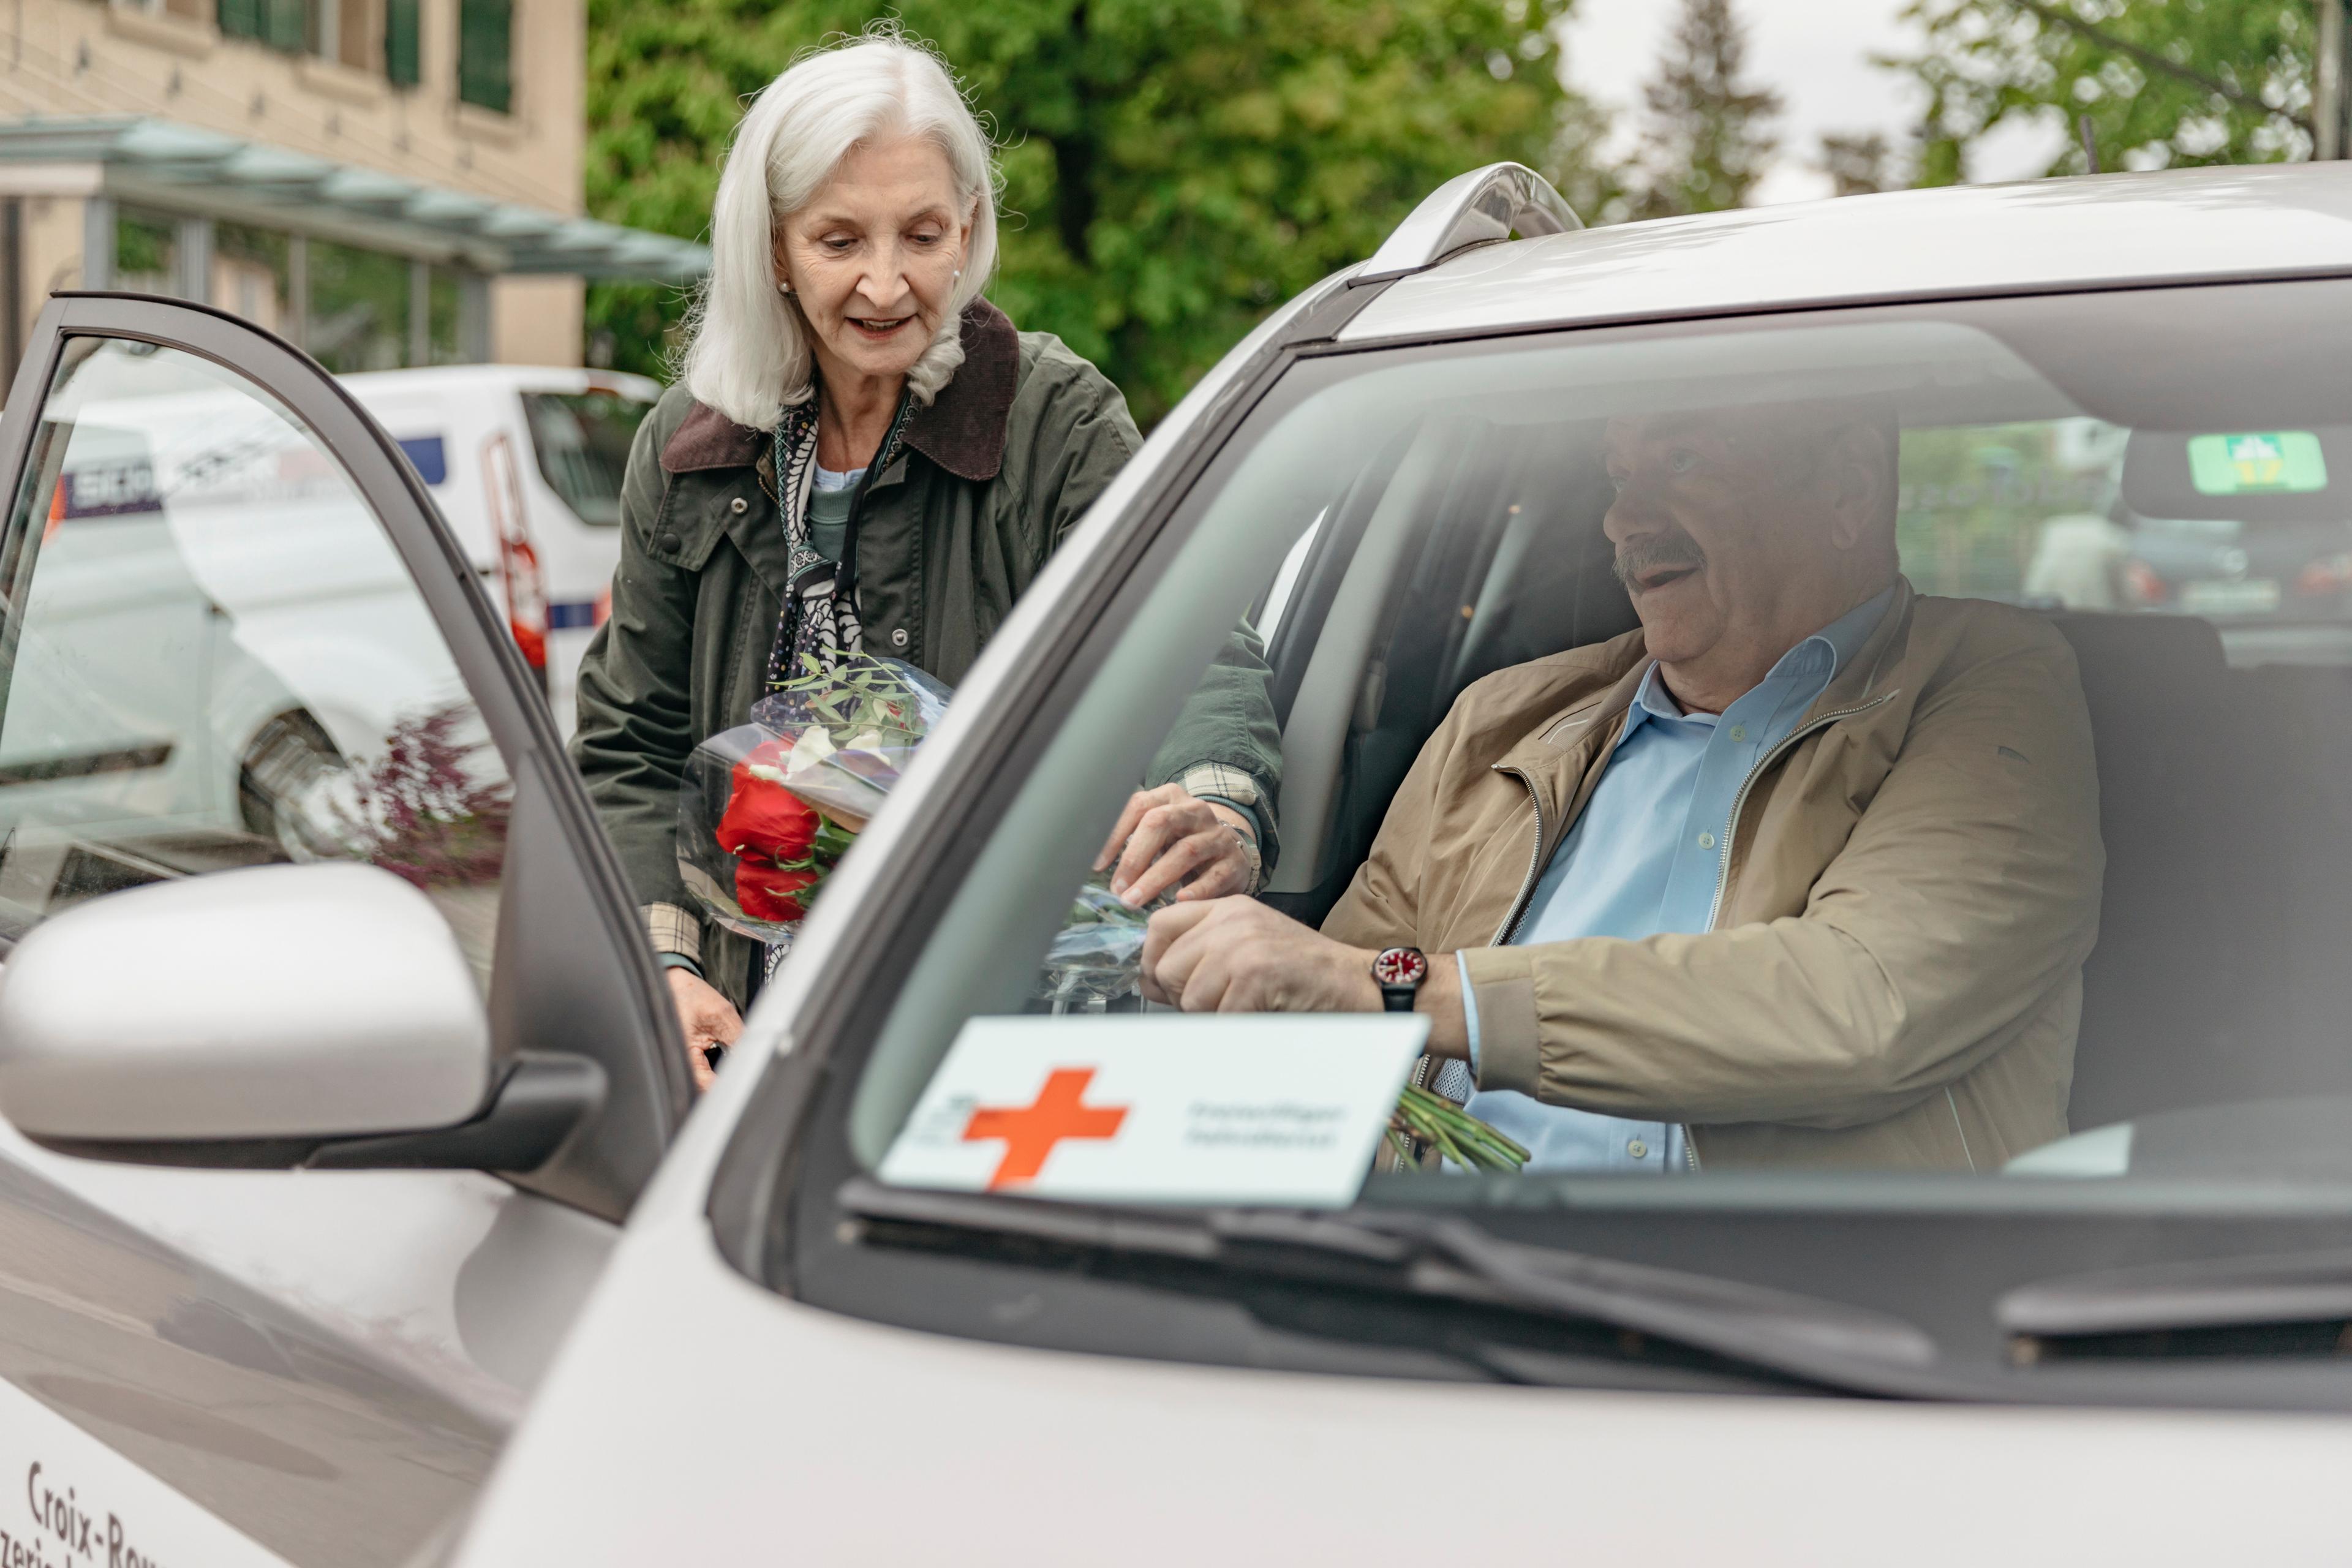 Fahrdienst: Eine ältere Frau hilft einem älteren Herrn einsteigen. Sie reicht ihm einen Blumenstrauss.